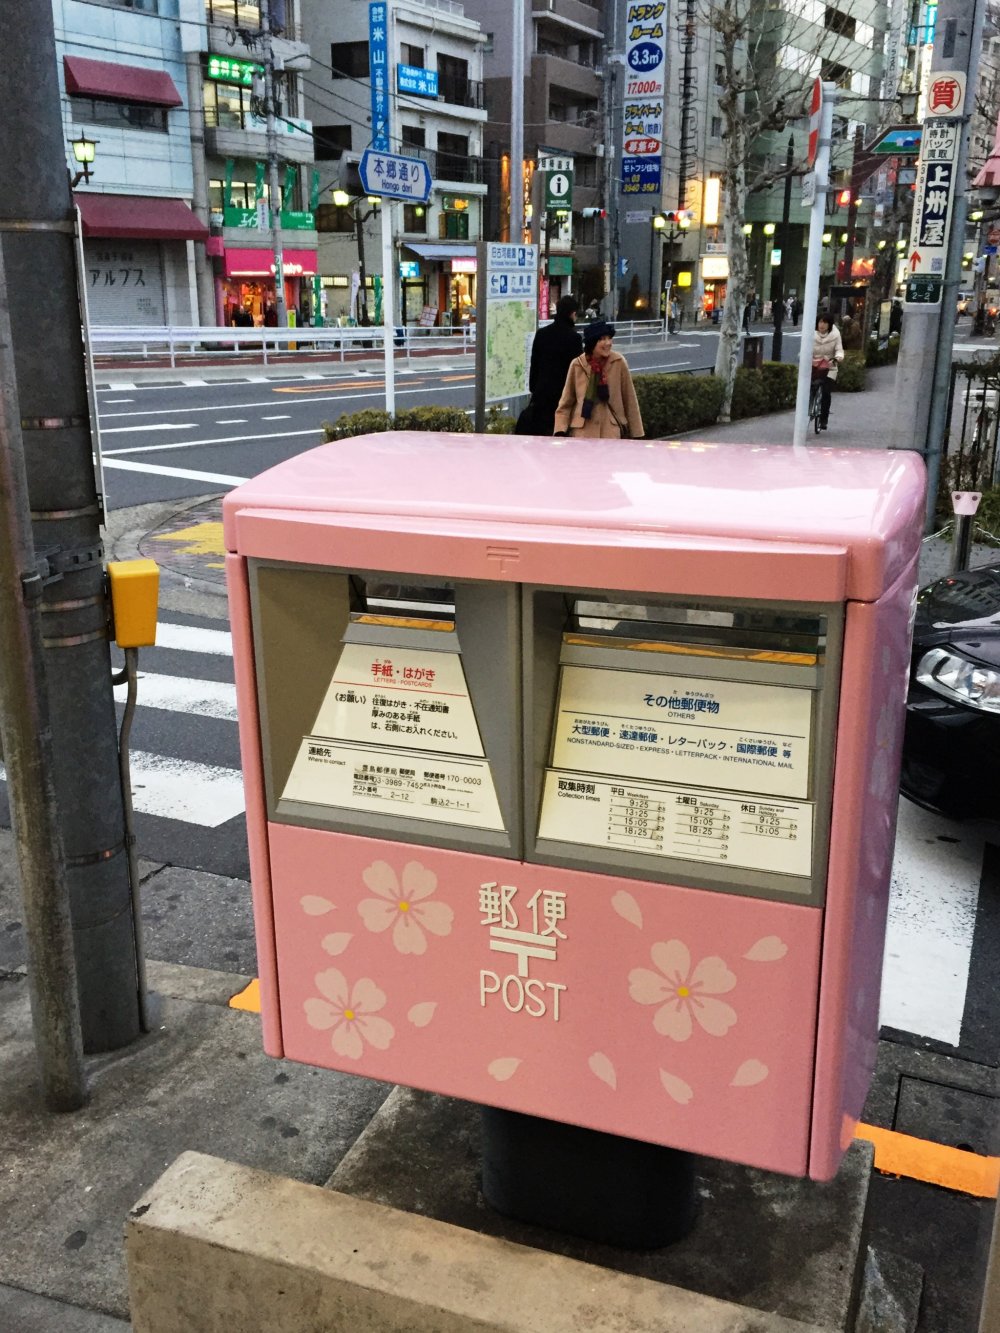 ตู้ไปรษณีย์ที่สวยงามหน้าสถานี JR Komagome